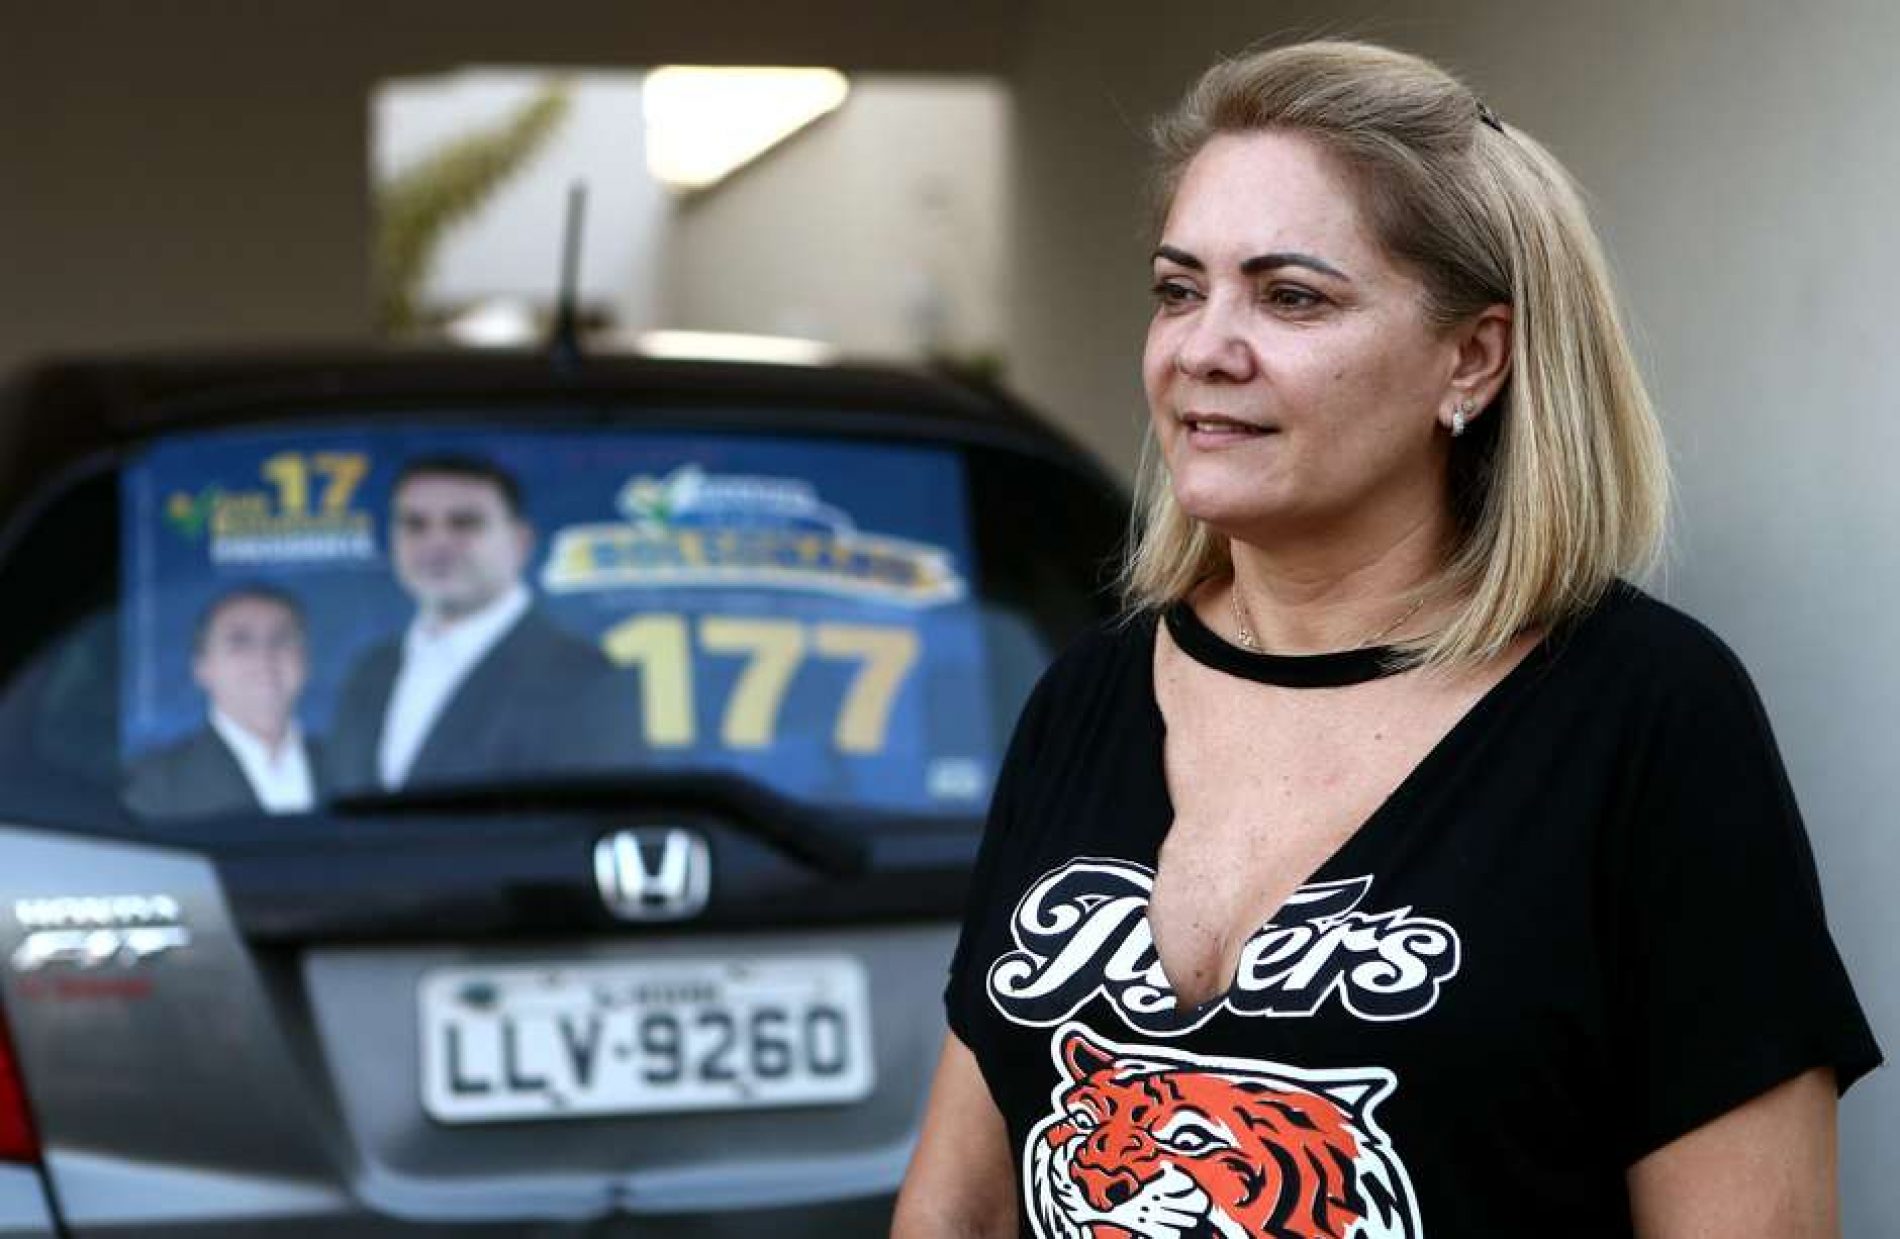 BOATO: Ex-mulher de Bolsonaro diz “Não sei como surgiu esse boato”